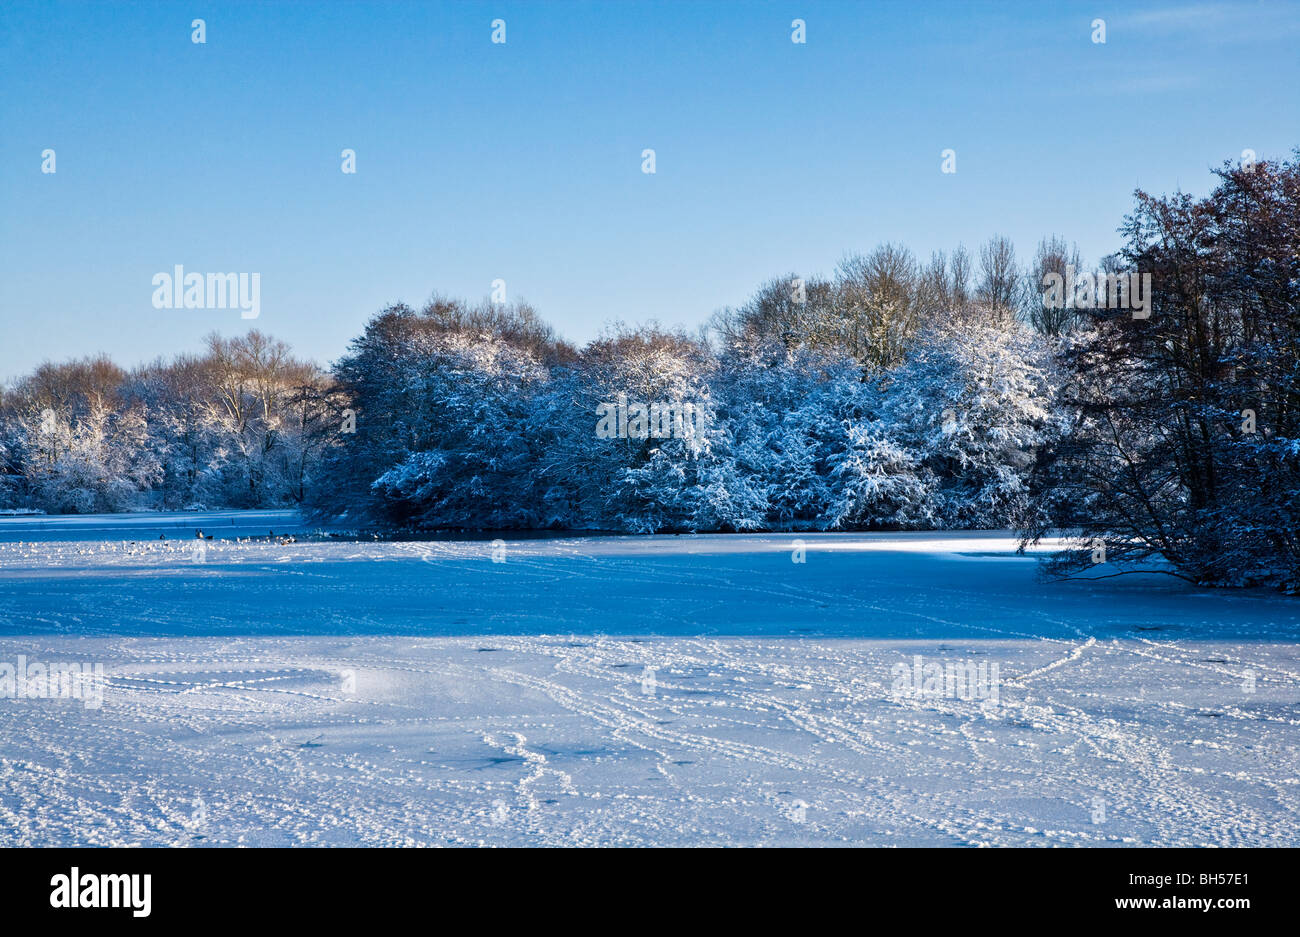 Das gefrorene Wasser eines kleinen Sees, bekannt als Liden Lagune in Swindon, Wiltshire, England, UK, aufgenommen im Januar 2010 Stockfoto